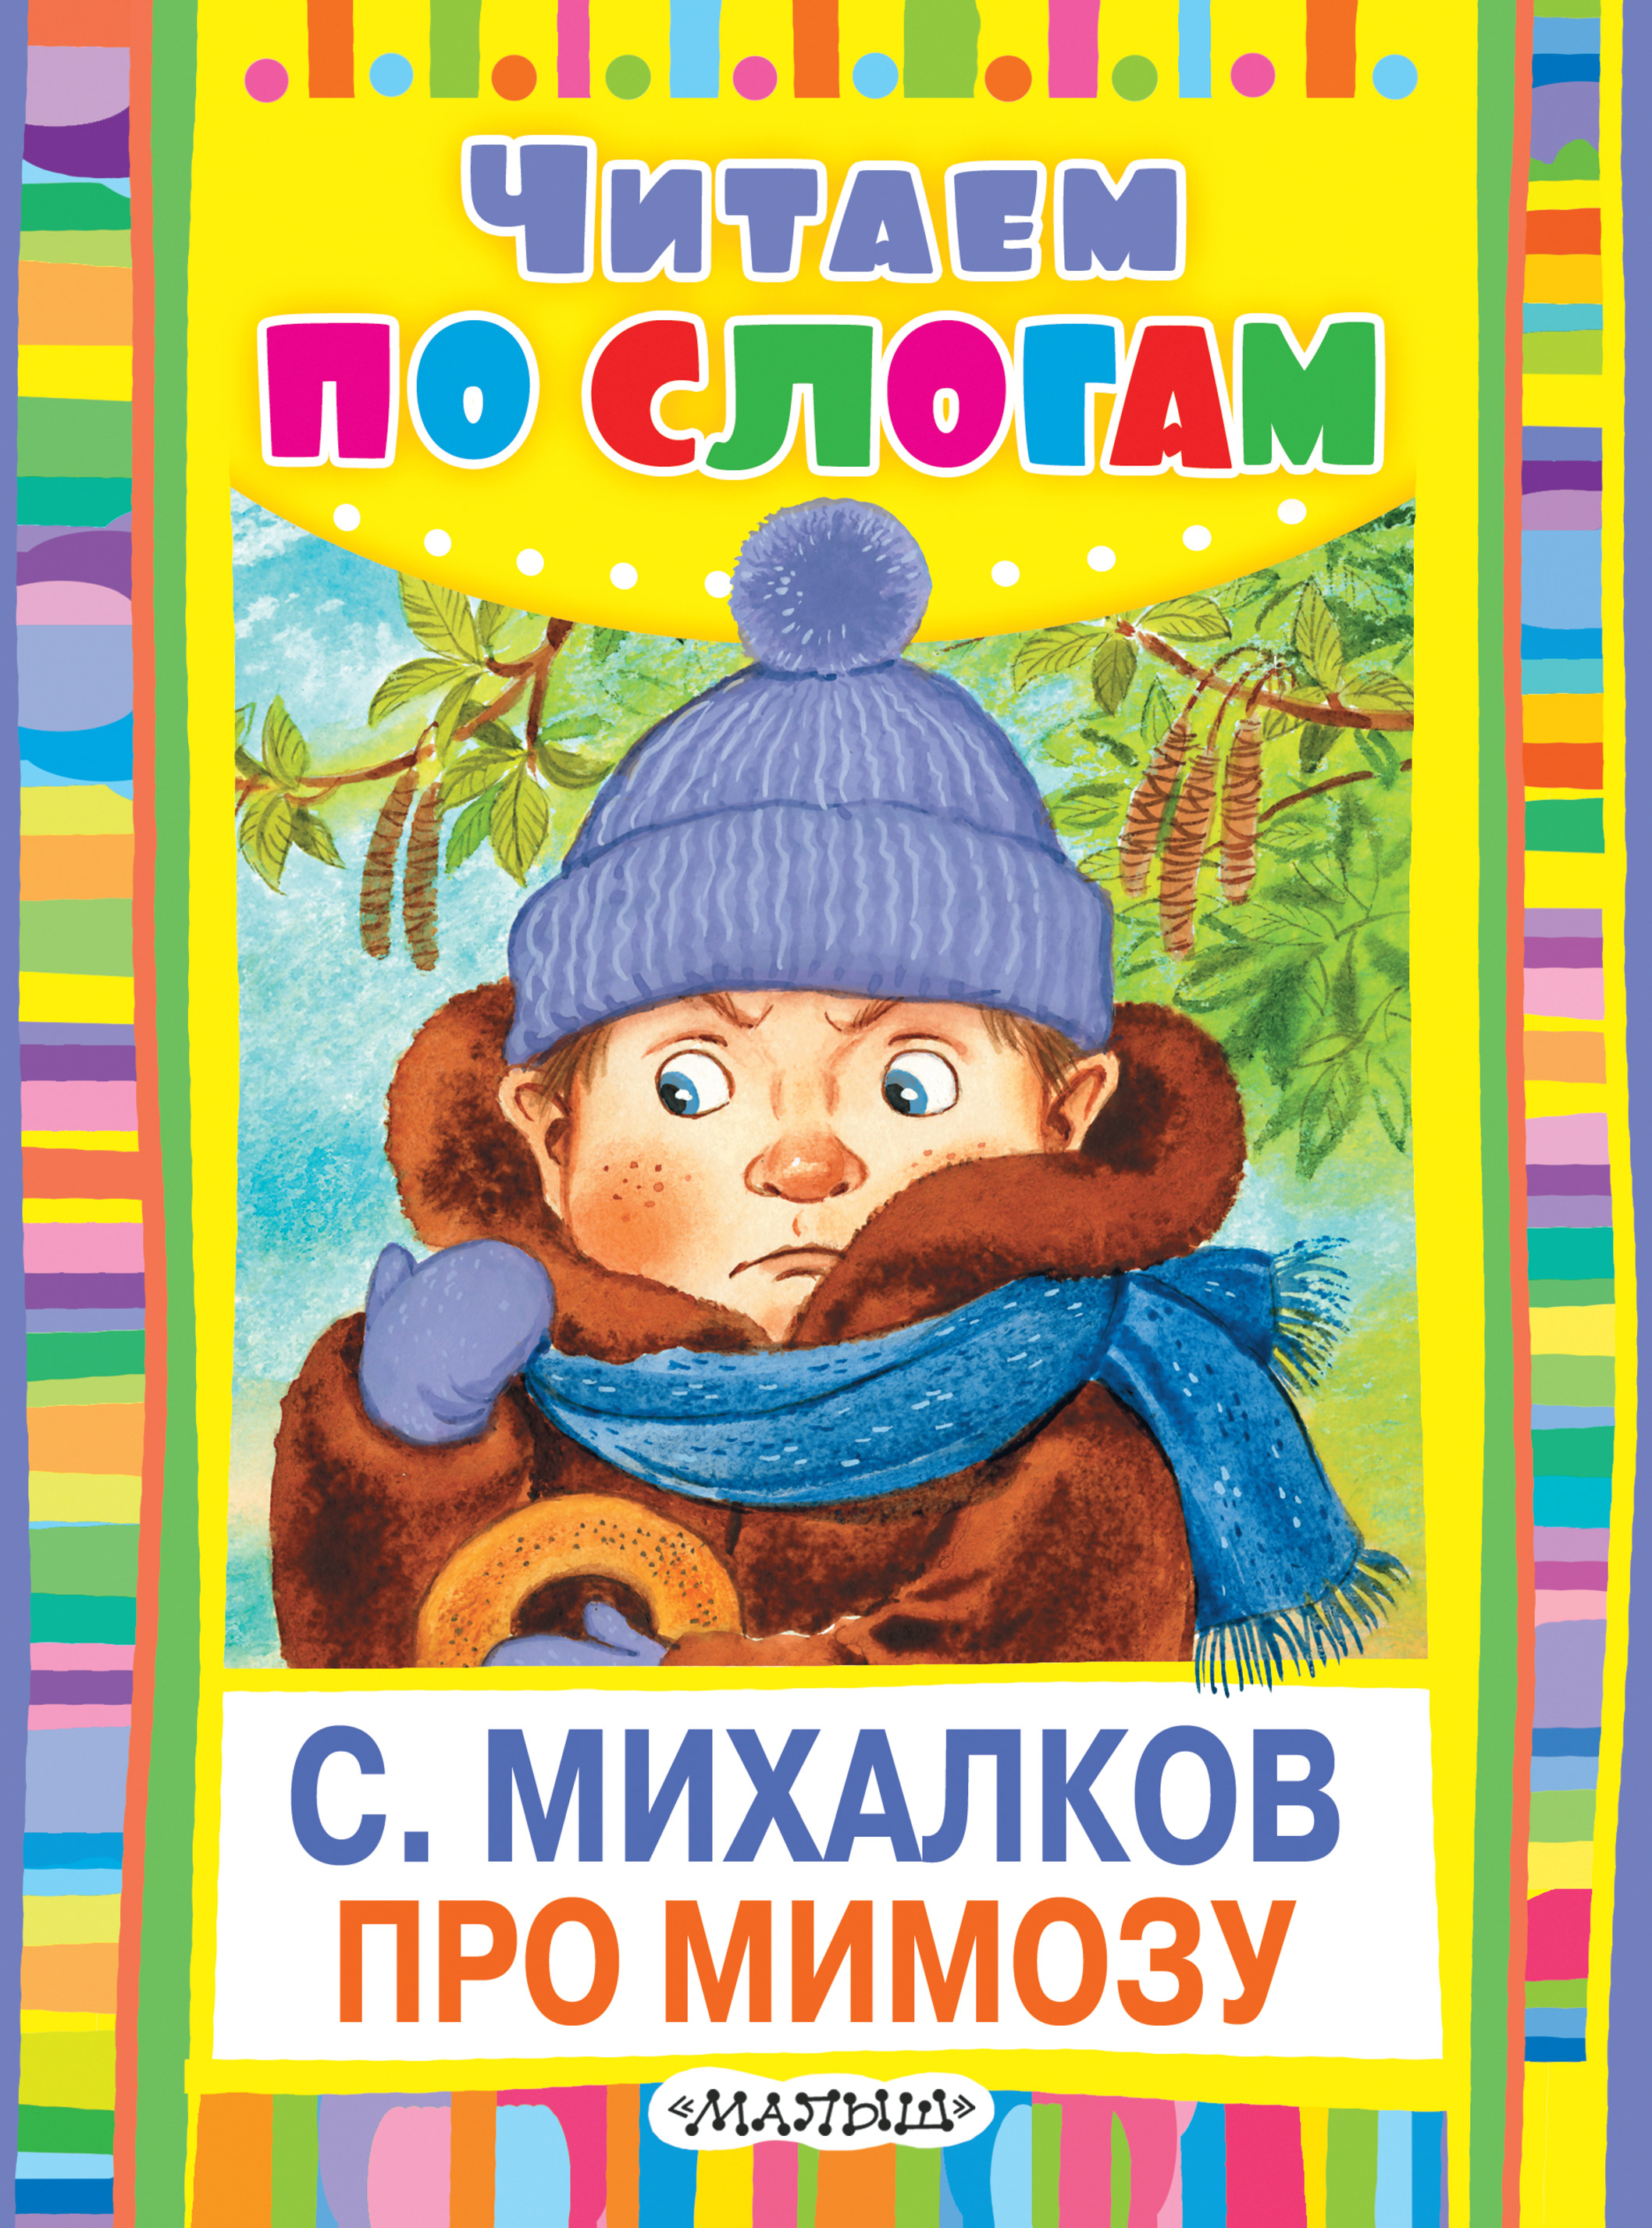 Книги про михалкова. Про мимозу Михалков книга. Обложки книг Сергея Михалкова для детей.